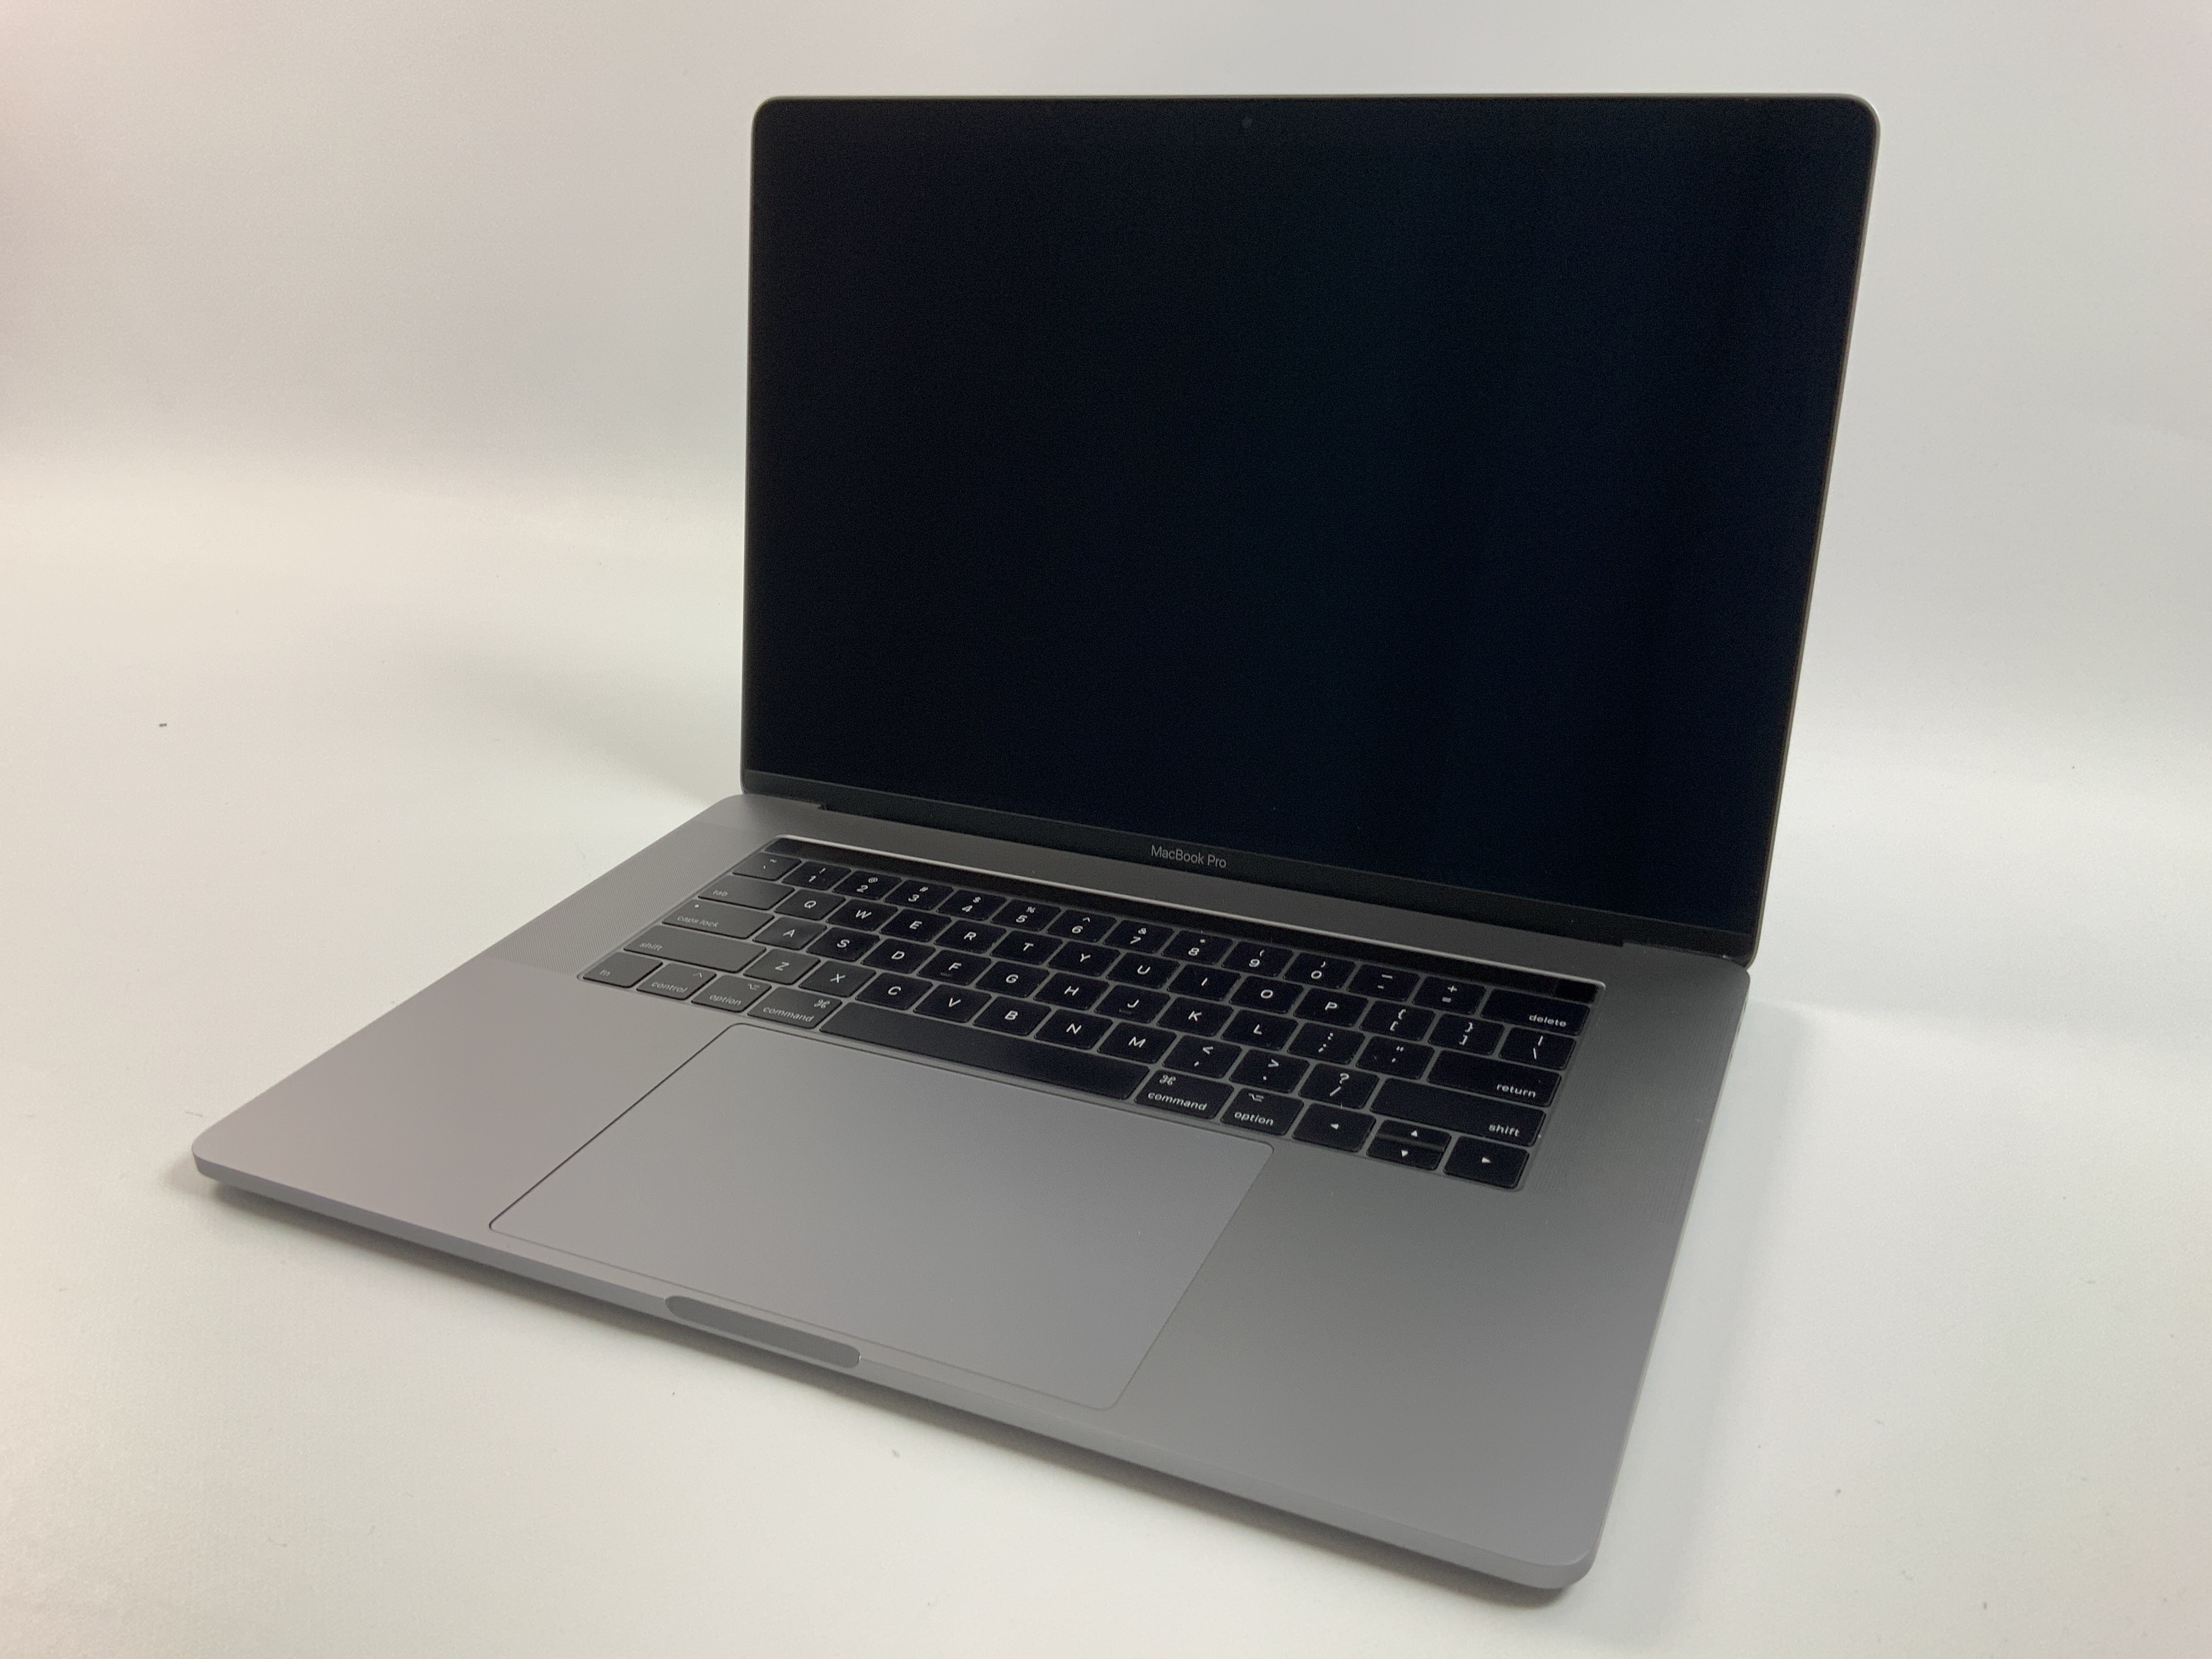 MacBook Pro 15" Touch Bar Mid 2017 (Intel Quad-Core i7 2.8 GHz 16 GB RAM 512 GB SSD), Space Gray, Intel Quad-Core i7 2.8 GHz, 16 GB RAM, 512 GB SSD, obraz 1